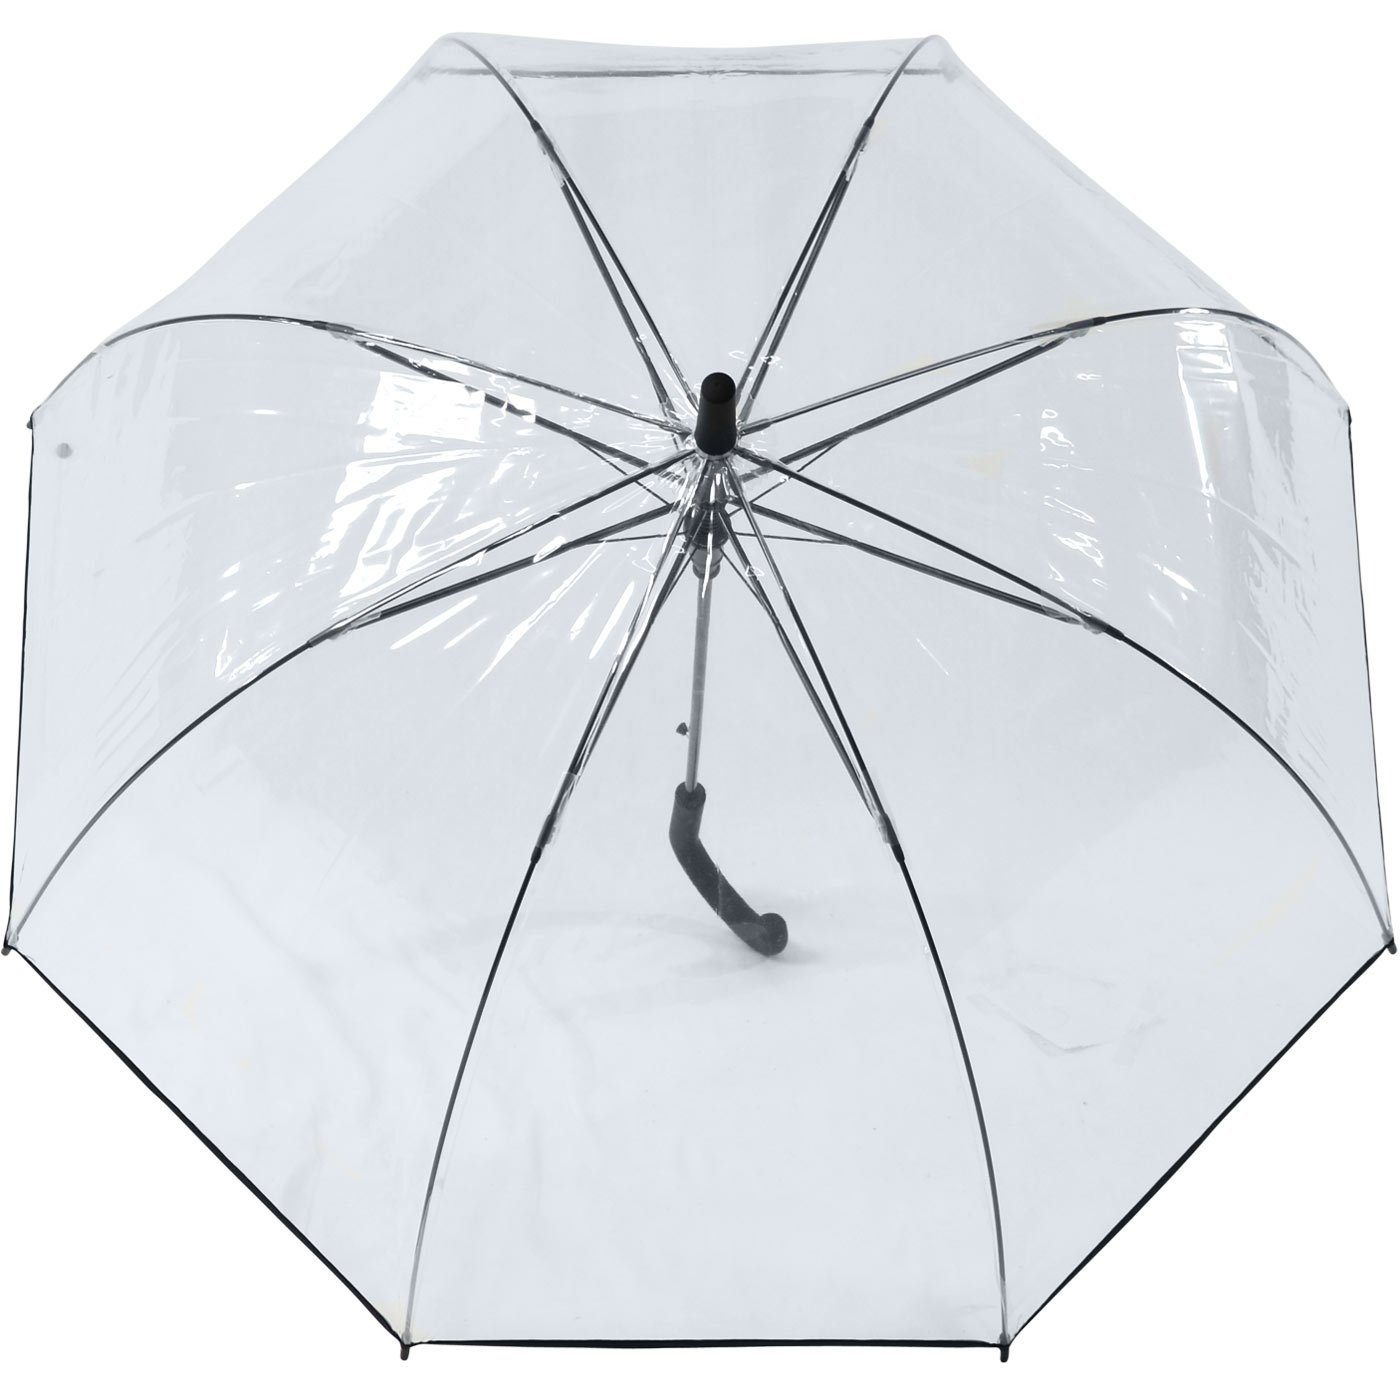 für perfekte Langregenschirm Automatik Impliva die Frisur Schutz der Falconetti® transparent, Glockenschirm durchsichtig,